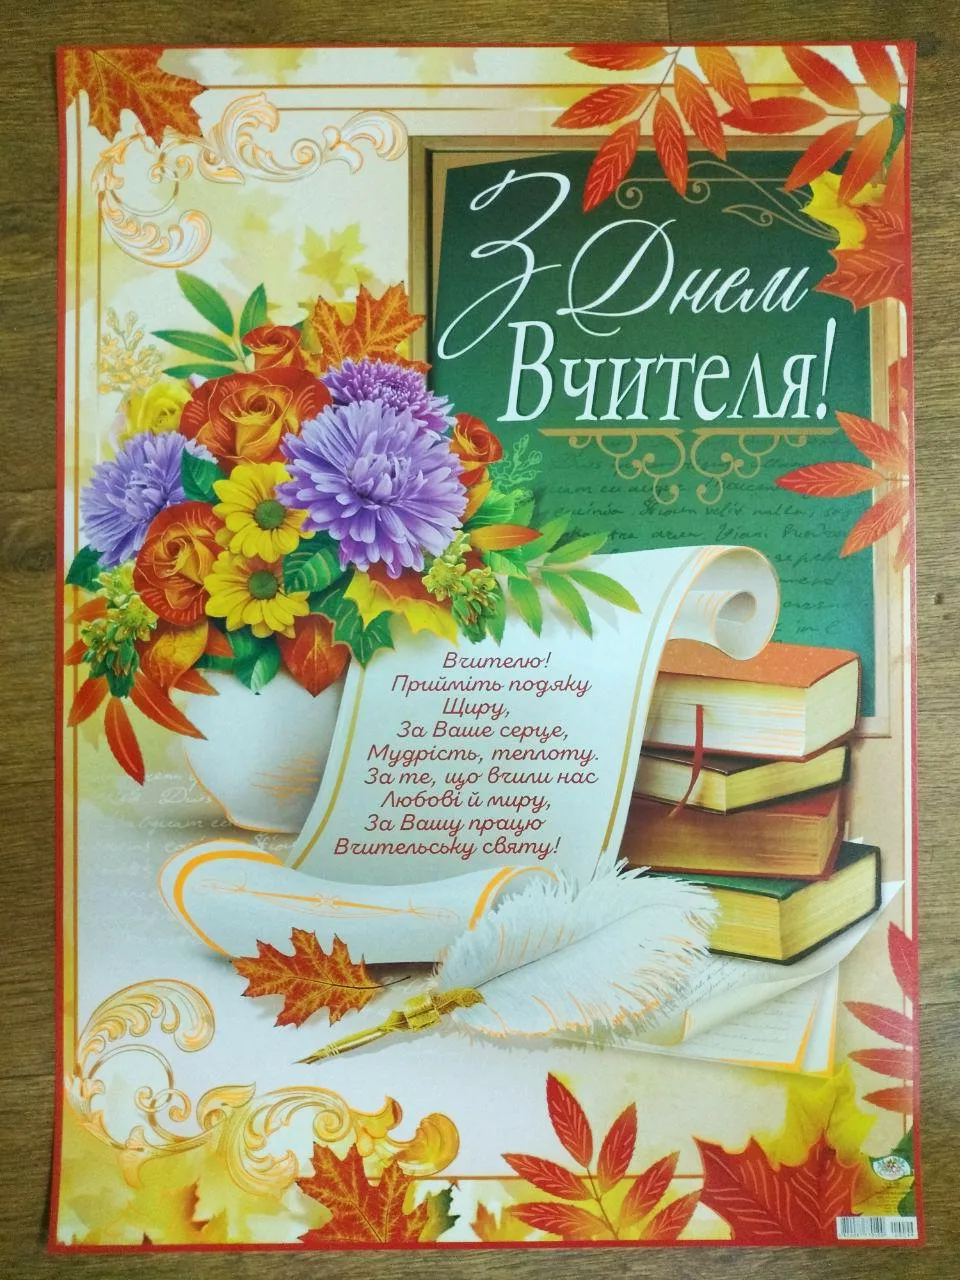 Фото Поздравление учителю украинского языка #25